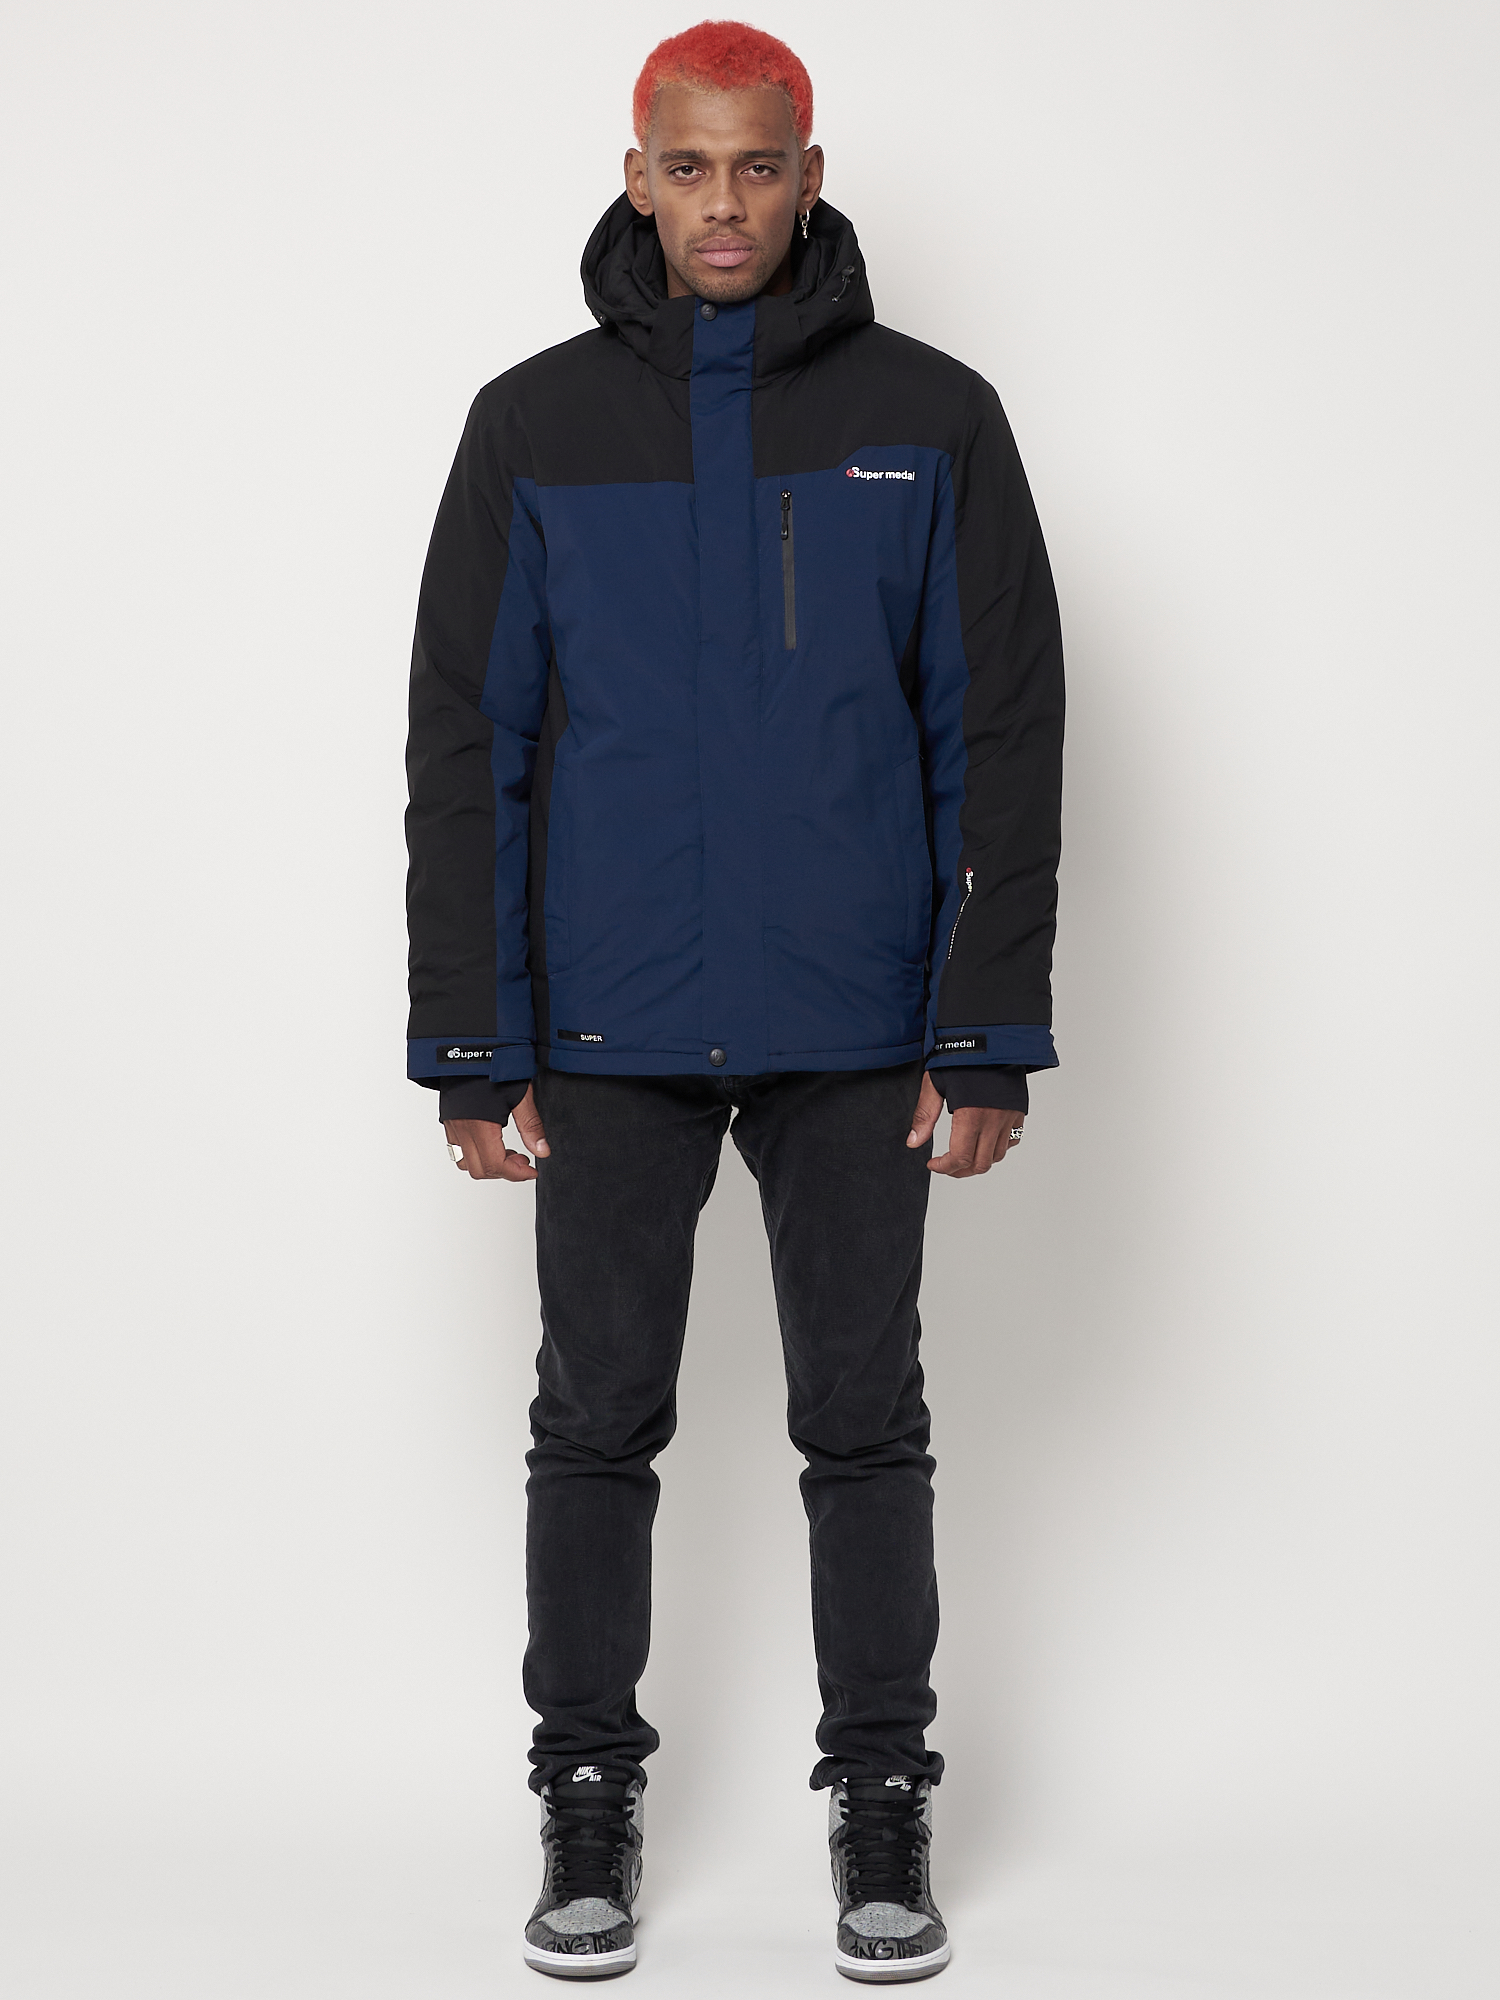 Купить Горнолыжная куртка мужская big size темно-синего цвета 88816TS